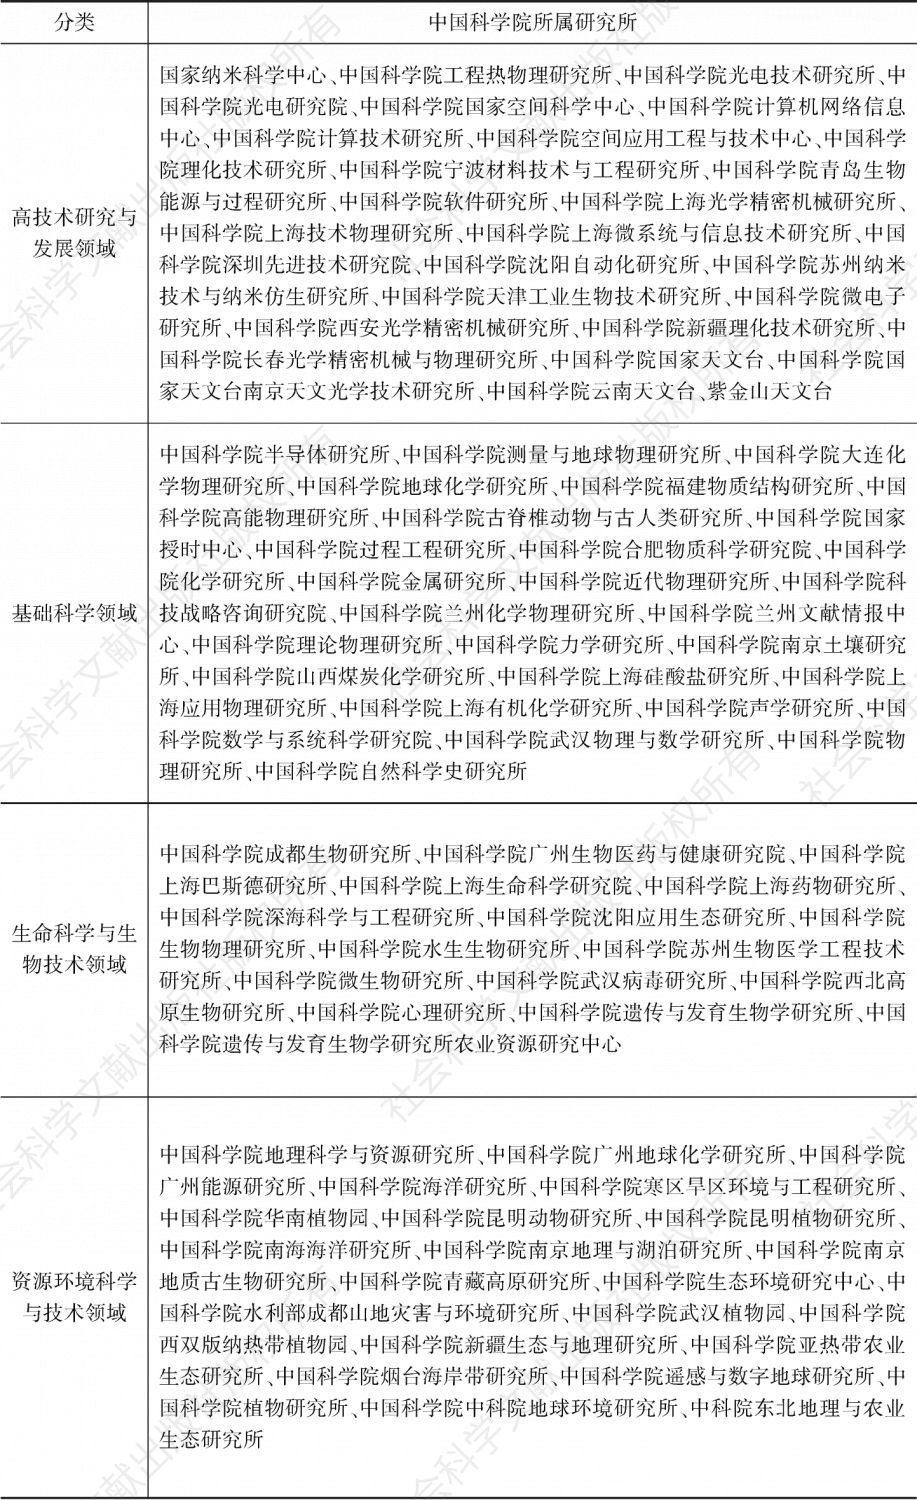 表4 中国科学院科研院所分类